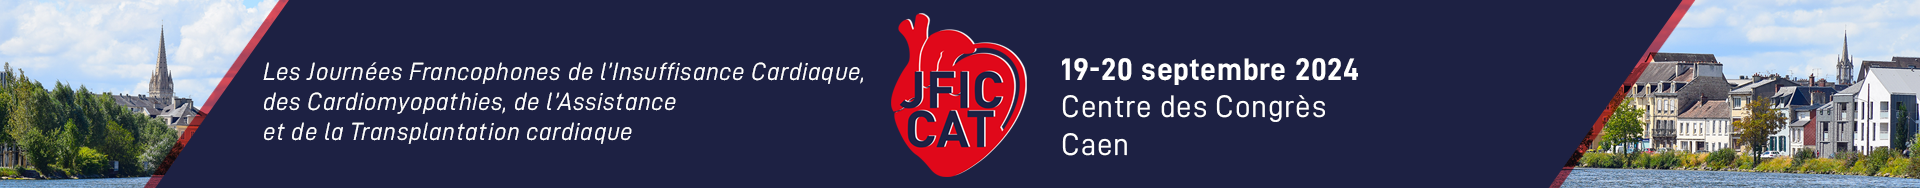 JFIC-CAT 2024 CAEN 19-20 SEPTEMBRE 2024